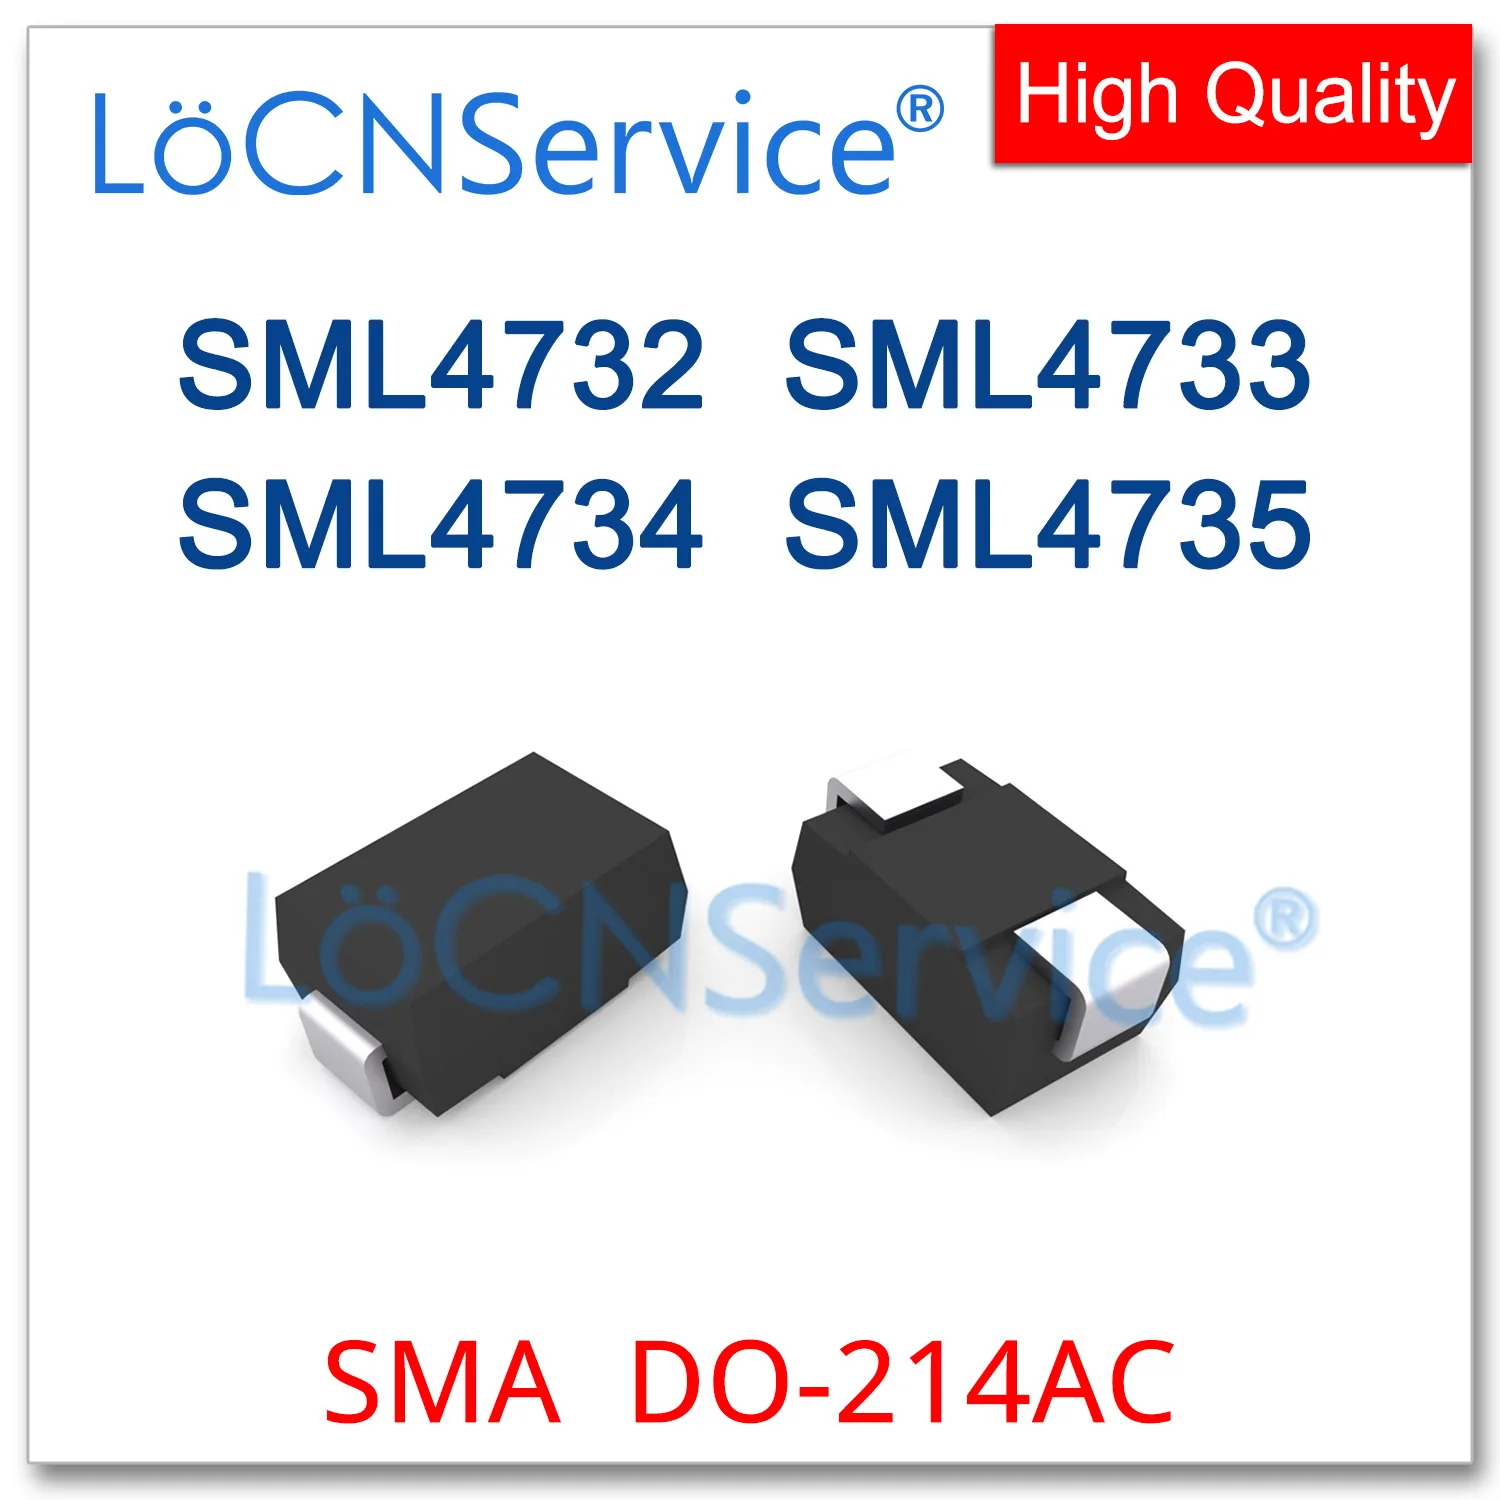 

LoCNService 200PCS 1800PCS SML4732 SML4733 SML4734 SML4735 DO-214AC High quality SML SMD SMA